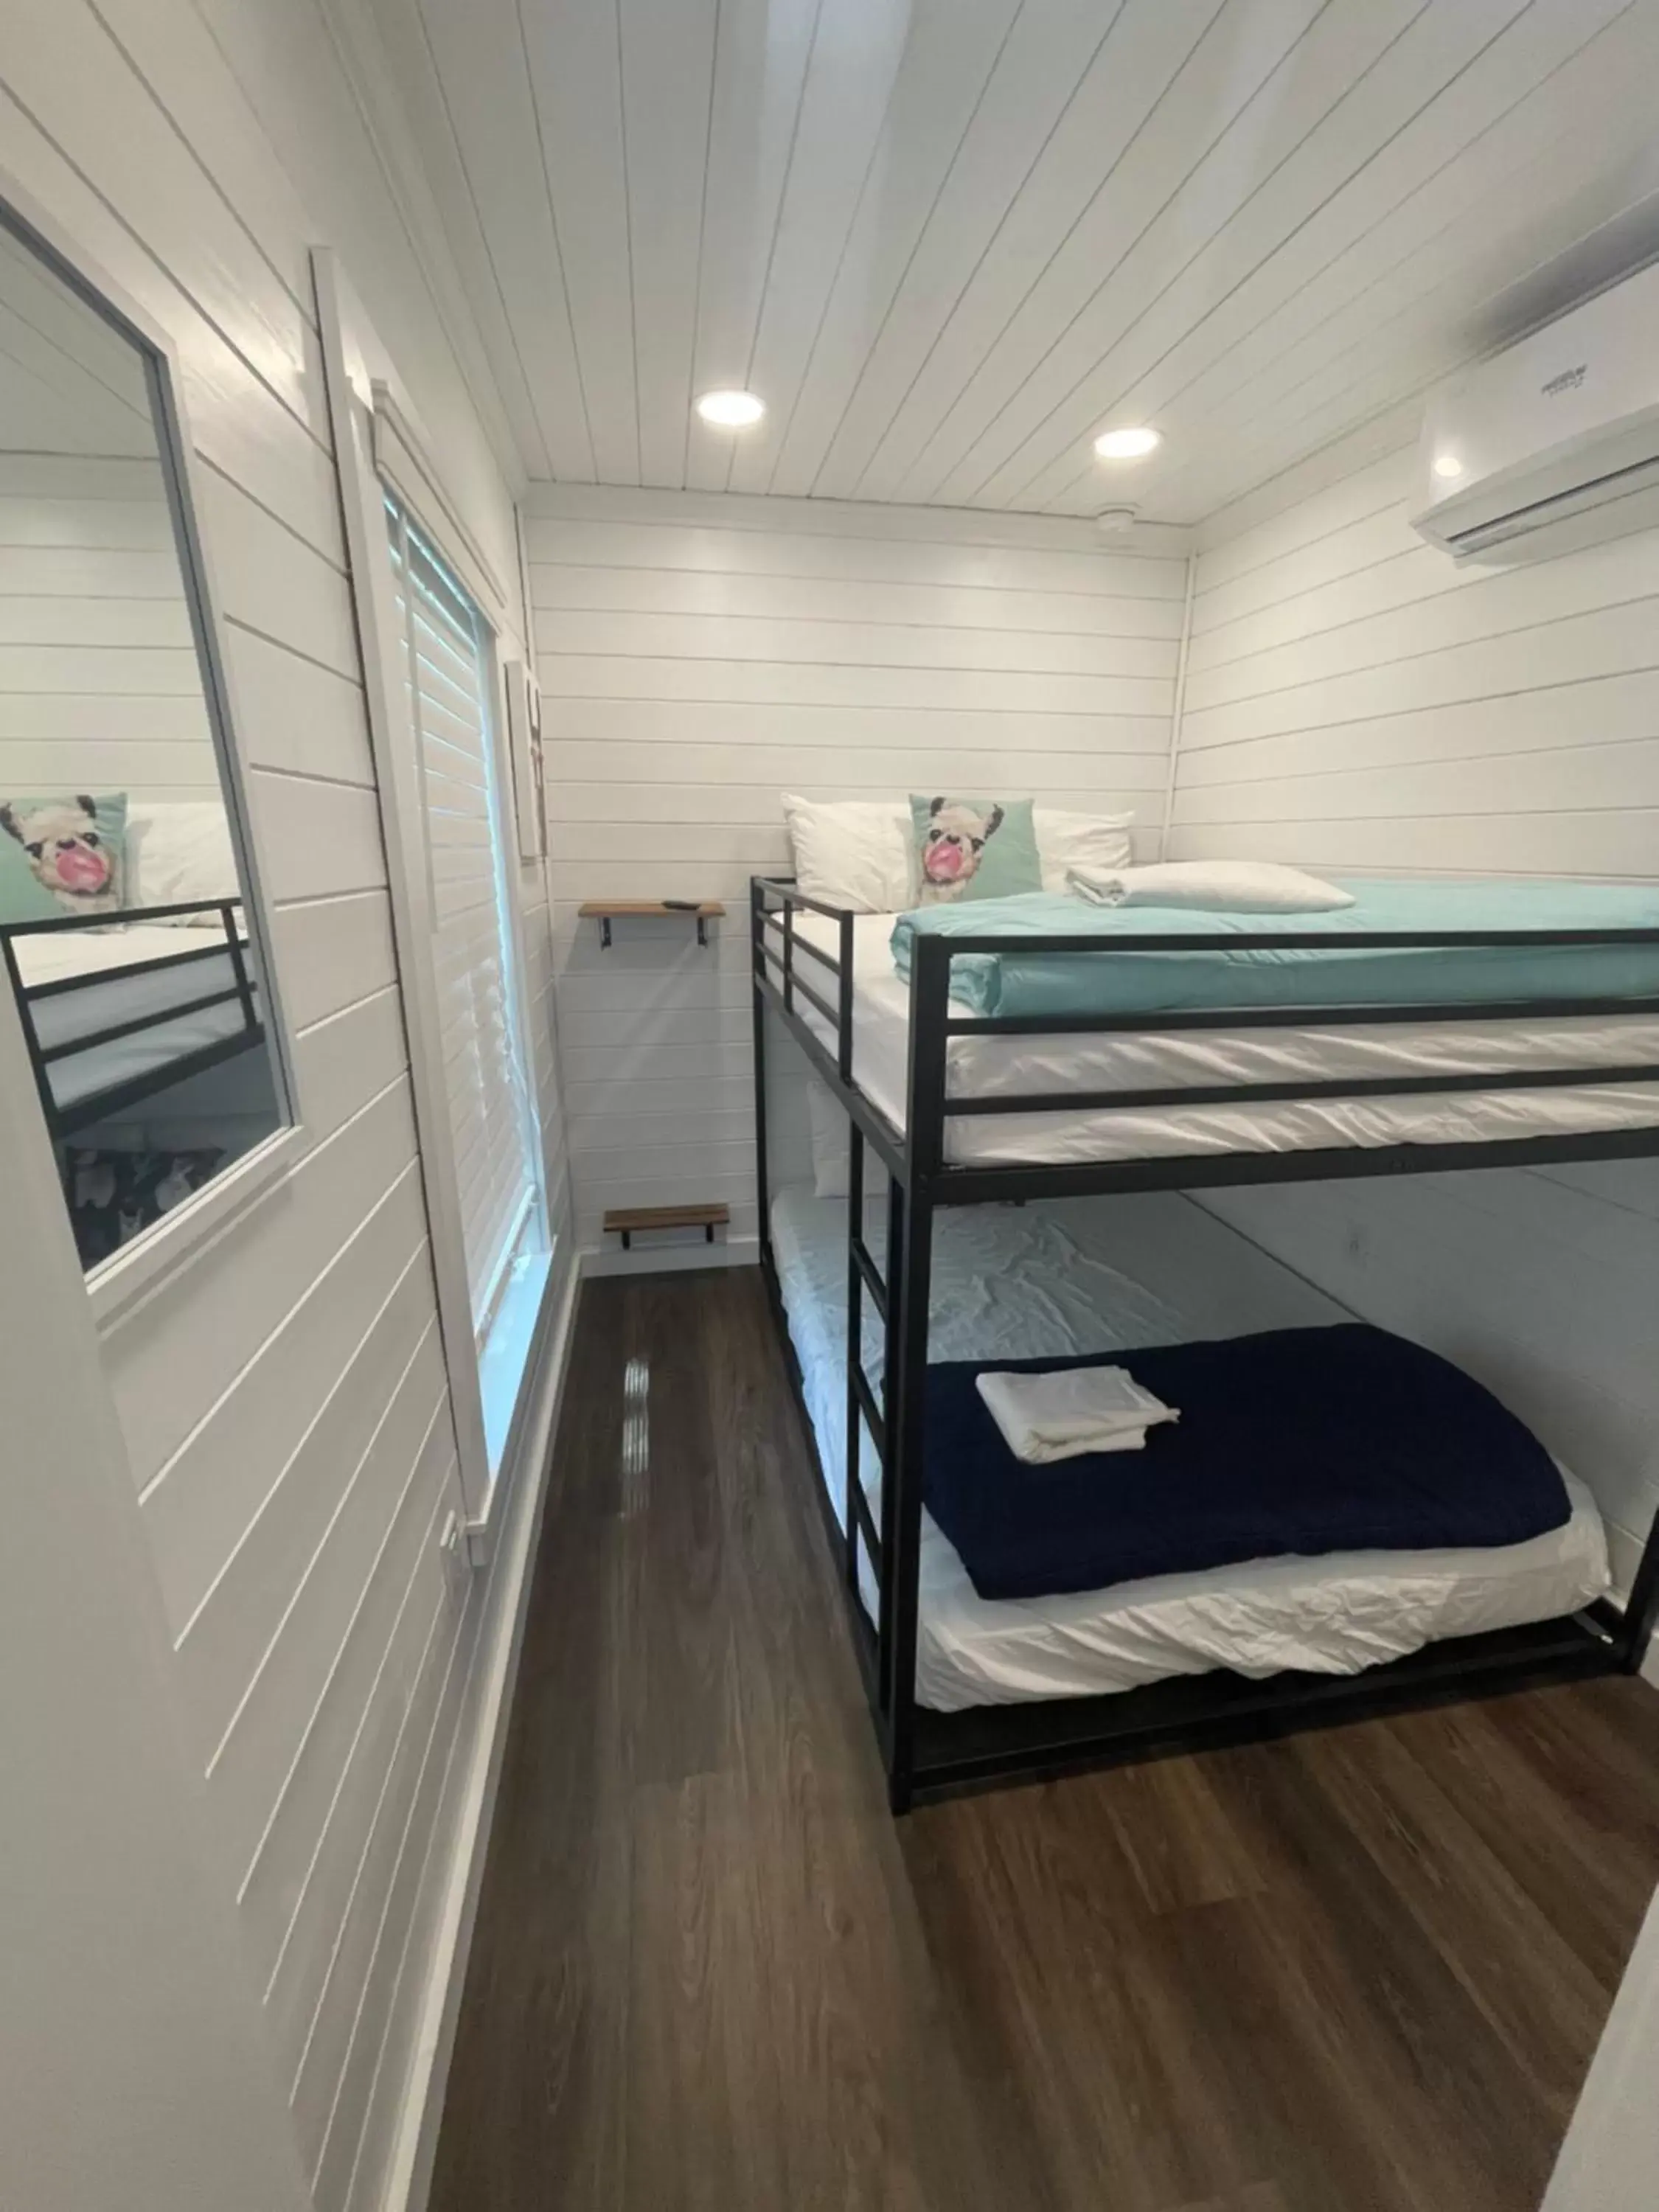 Bedroom, Bunk Bed in Camptel Poconos Lodging